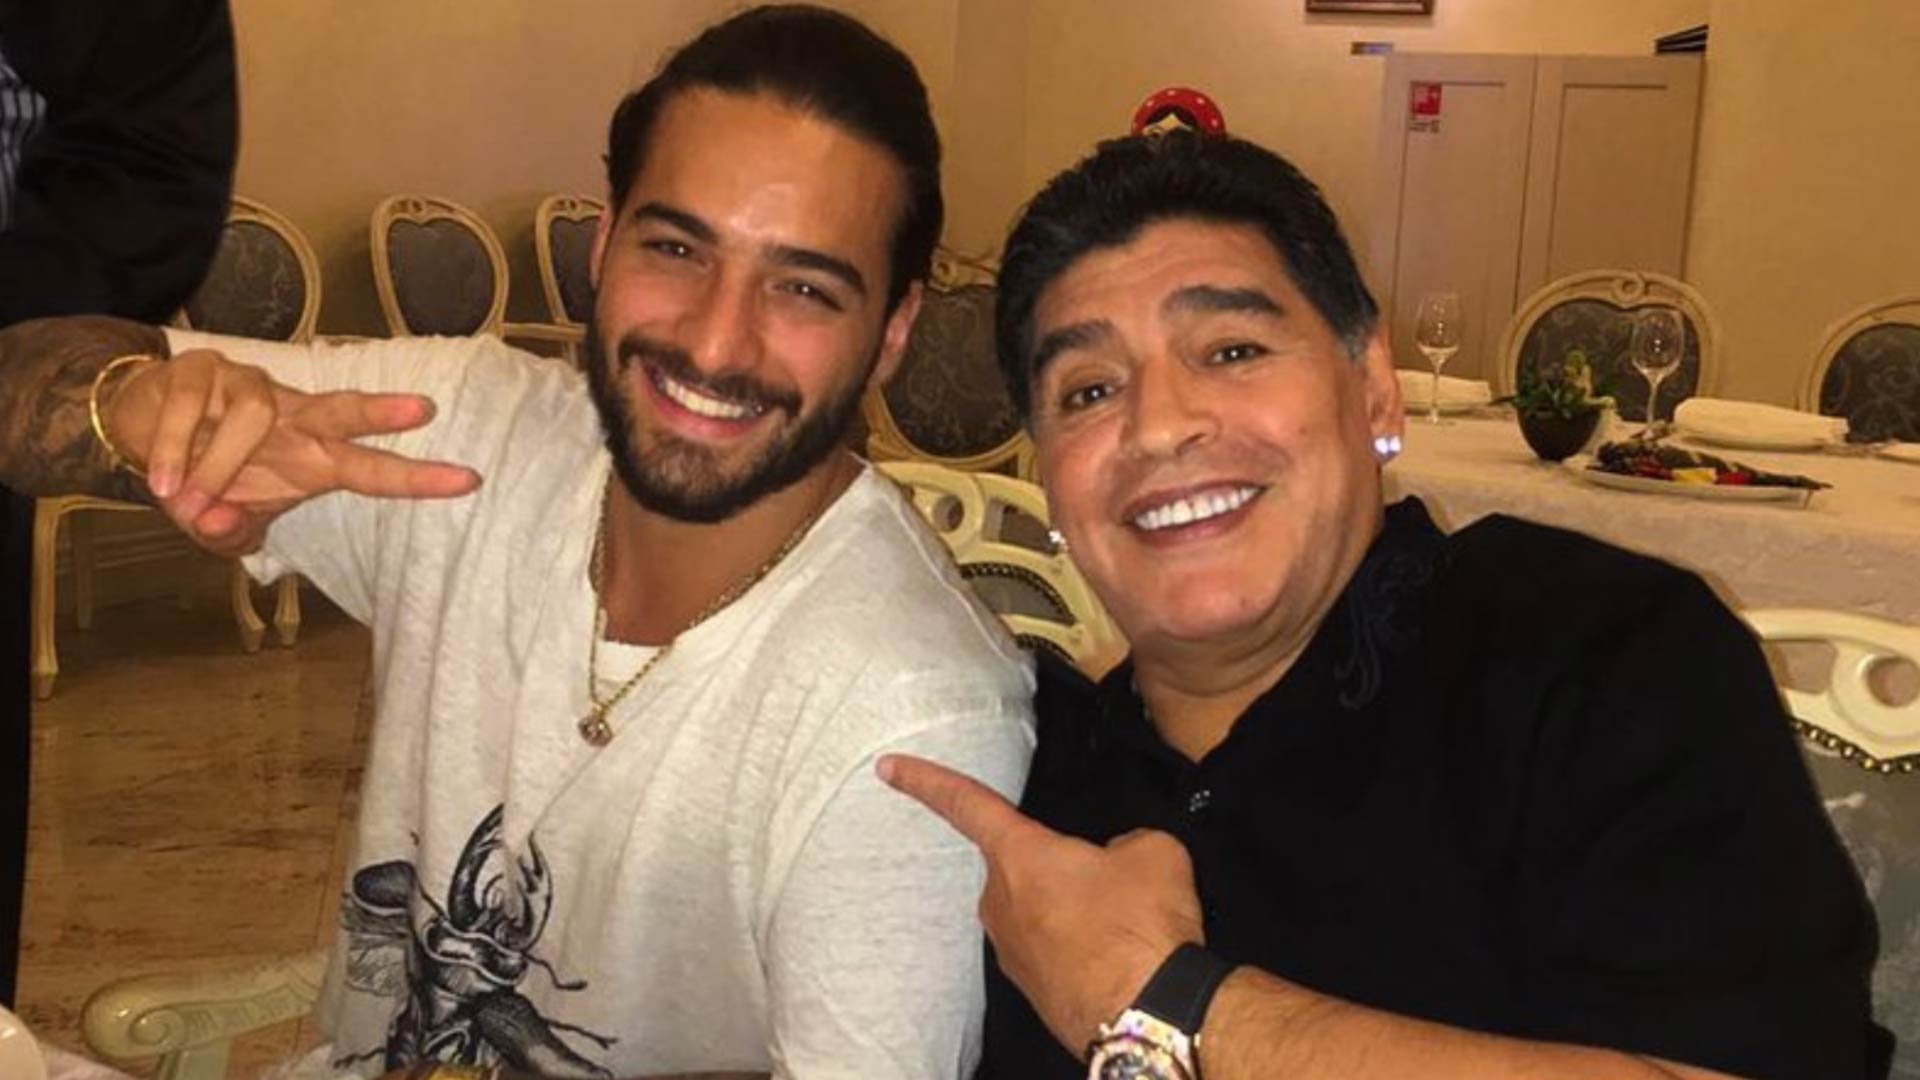 En el Mundial de Rusia, Maluma invitó al inolvidable Diego Maradona a participar de uno de sus videoclips. "No sé si ustedes conozcan (sic) a este hombre, no sé si lo han visto antes", dijo el cantante en un video que subió a su cuenta de Instagram